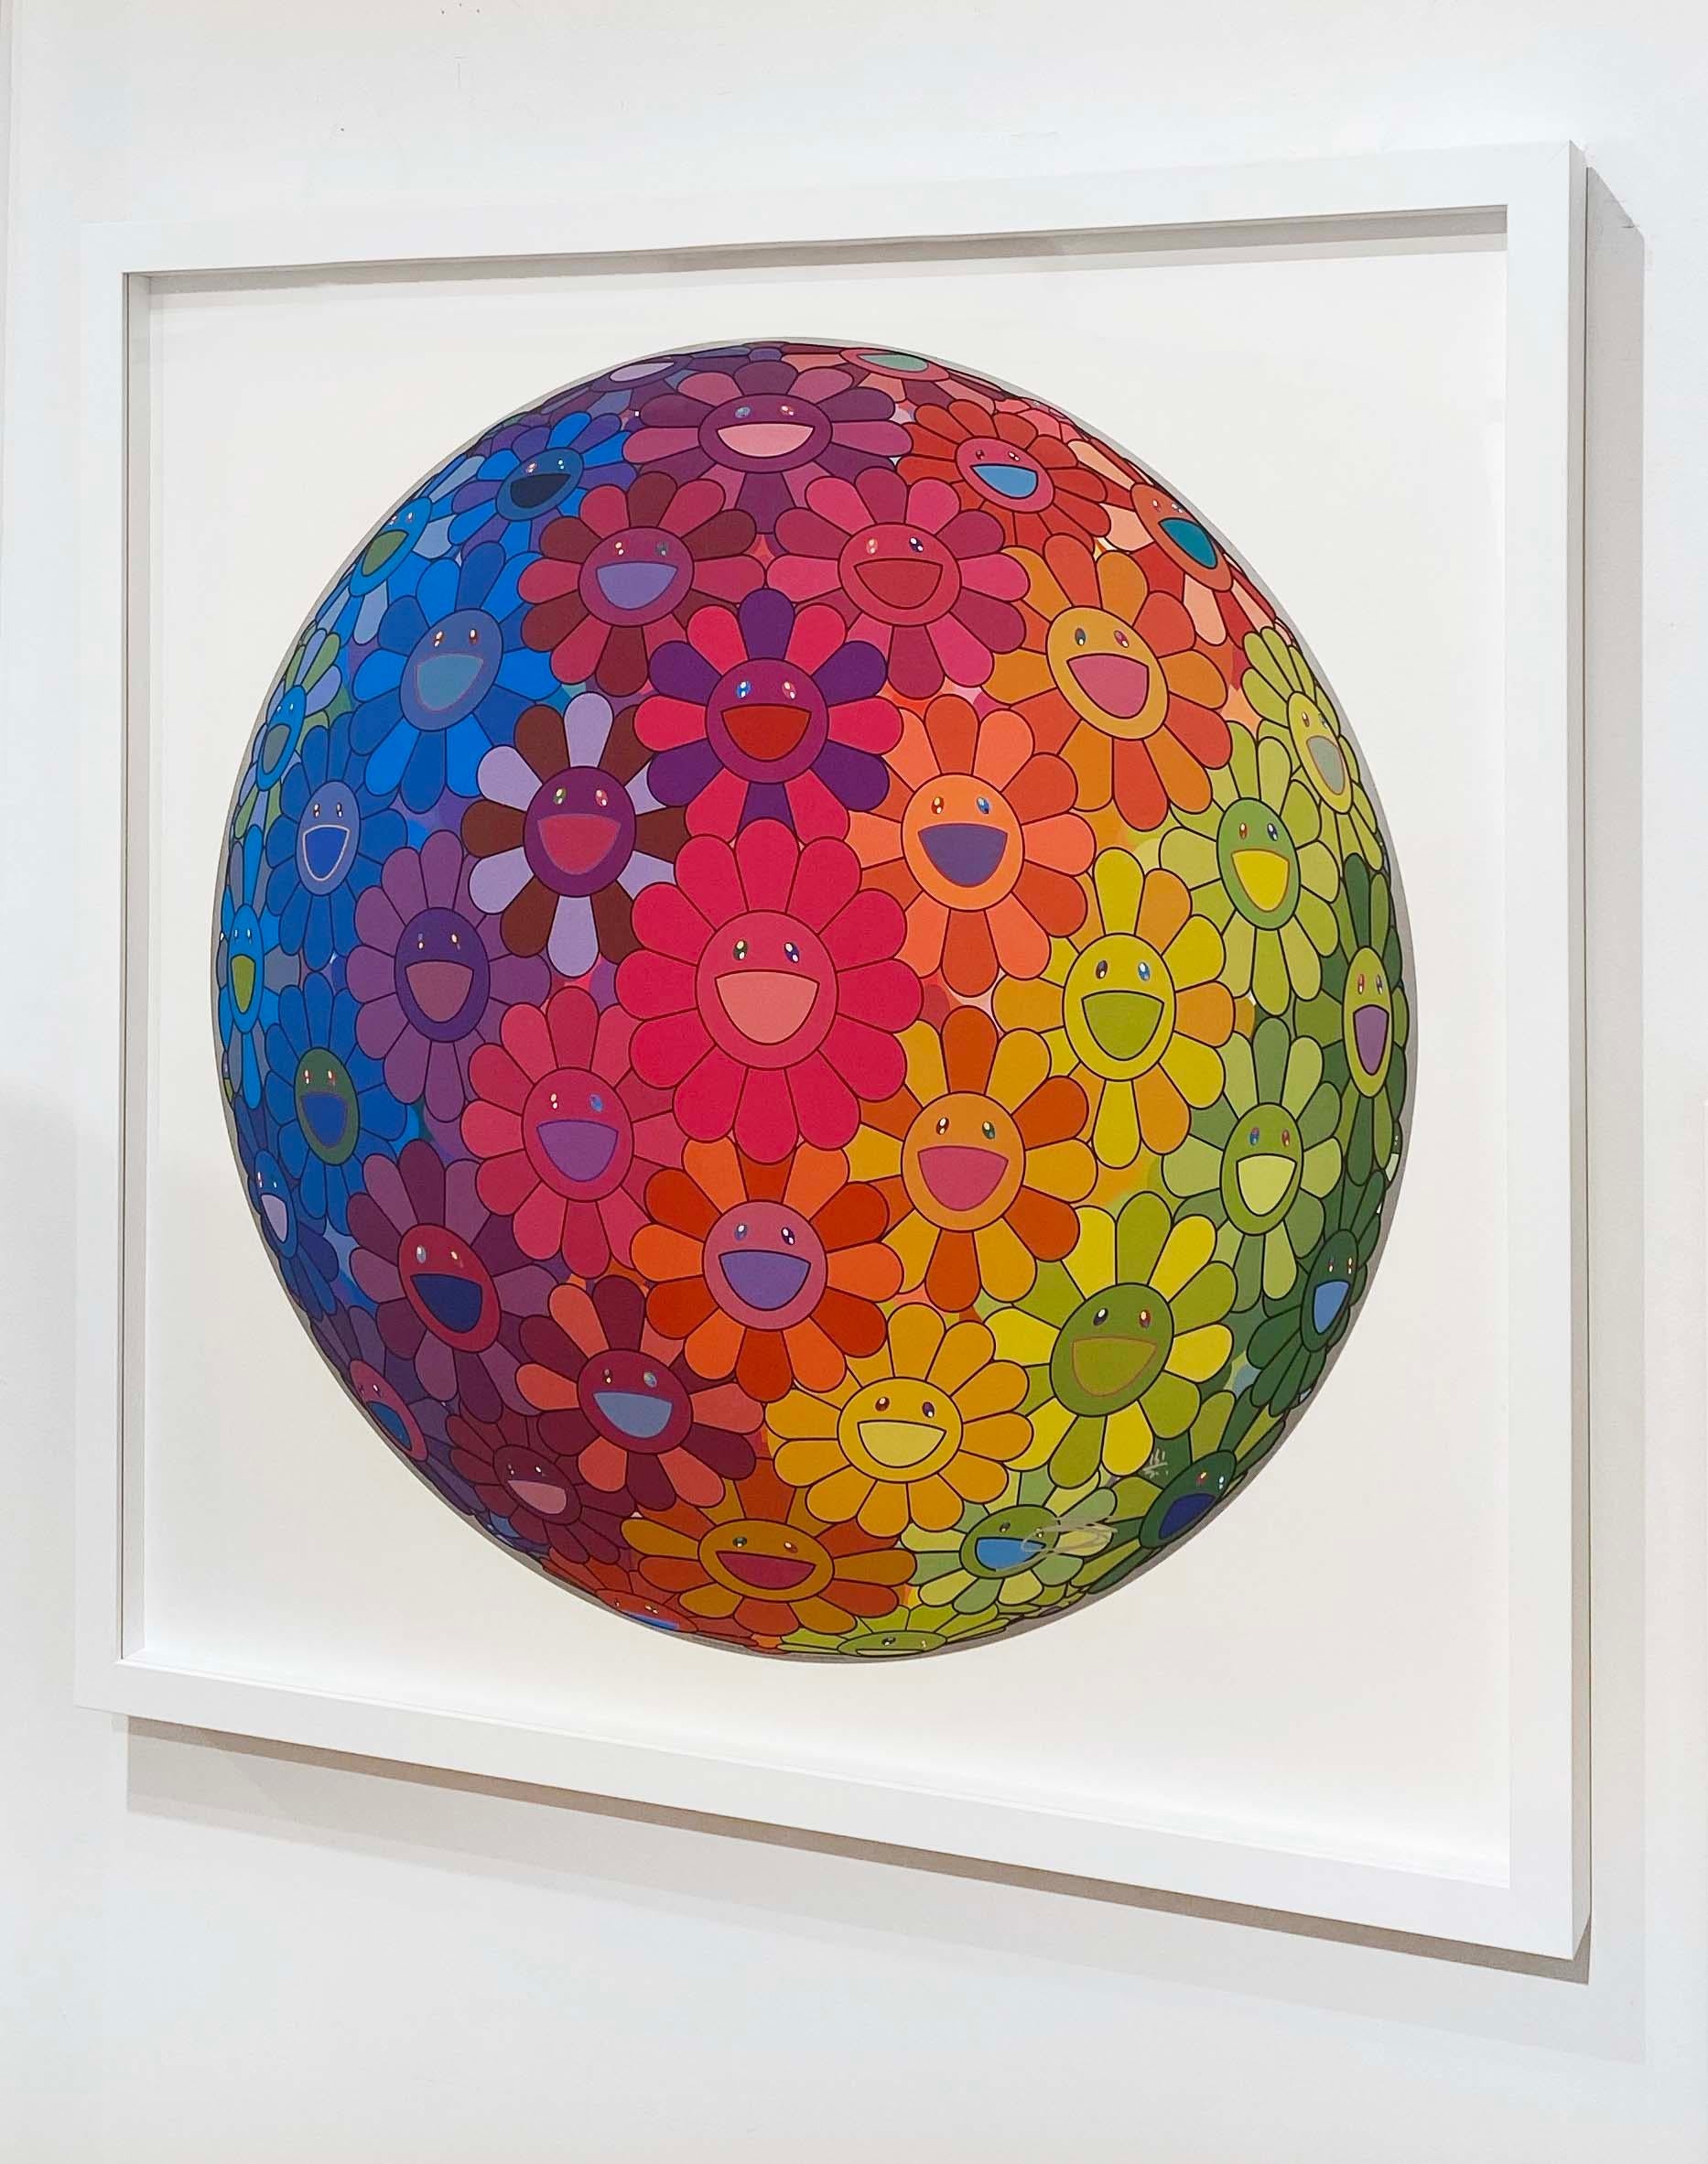 Künstler:  Murakami, Takashi
Titel:  Inside The Rainbow Heart
Datum:  2022
Medium:  Offsetlithographie in Farben auf glattem Velinpapier
Ungerahmt Abmessungen:  28